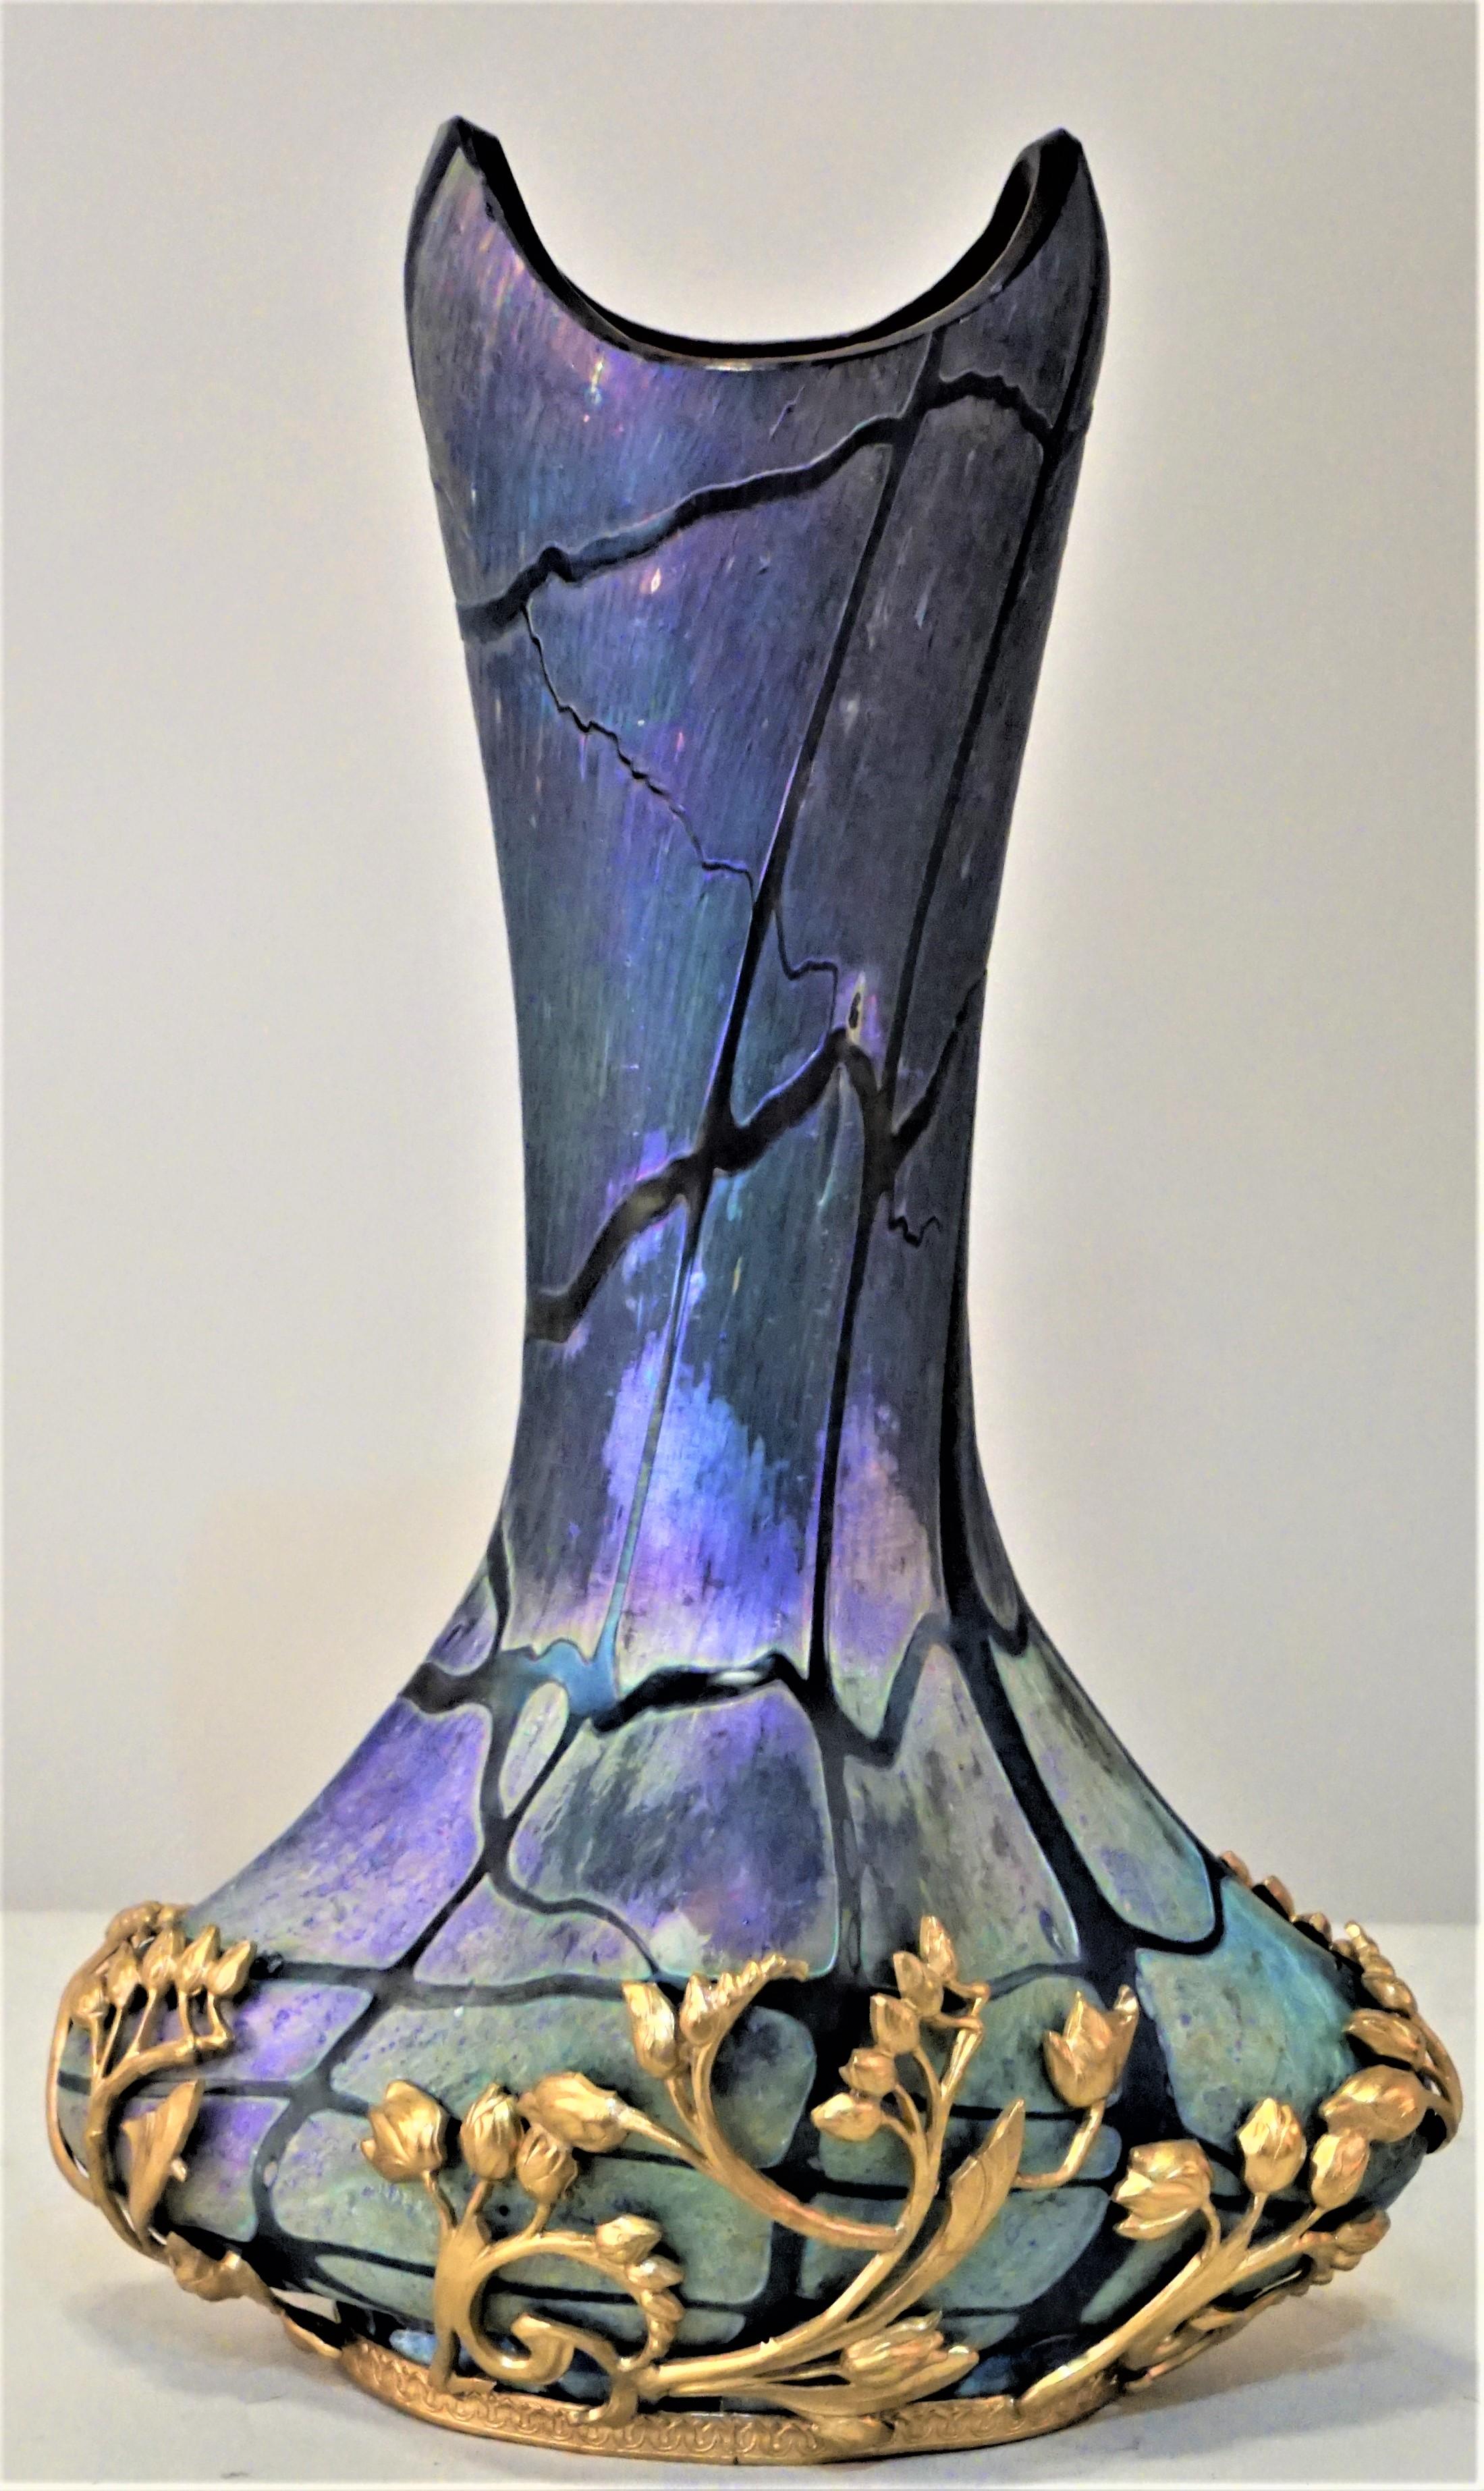 art nouveau glass vase